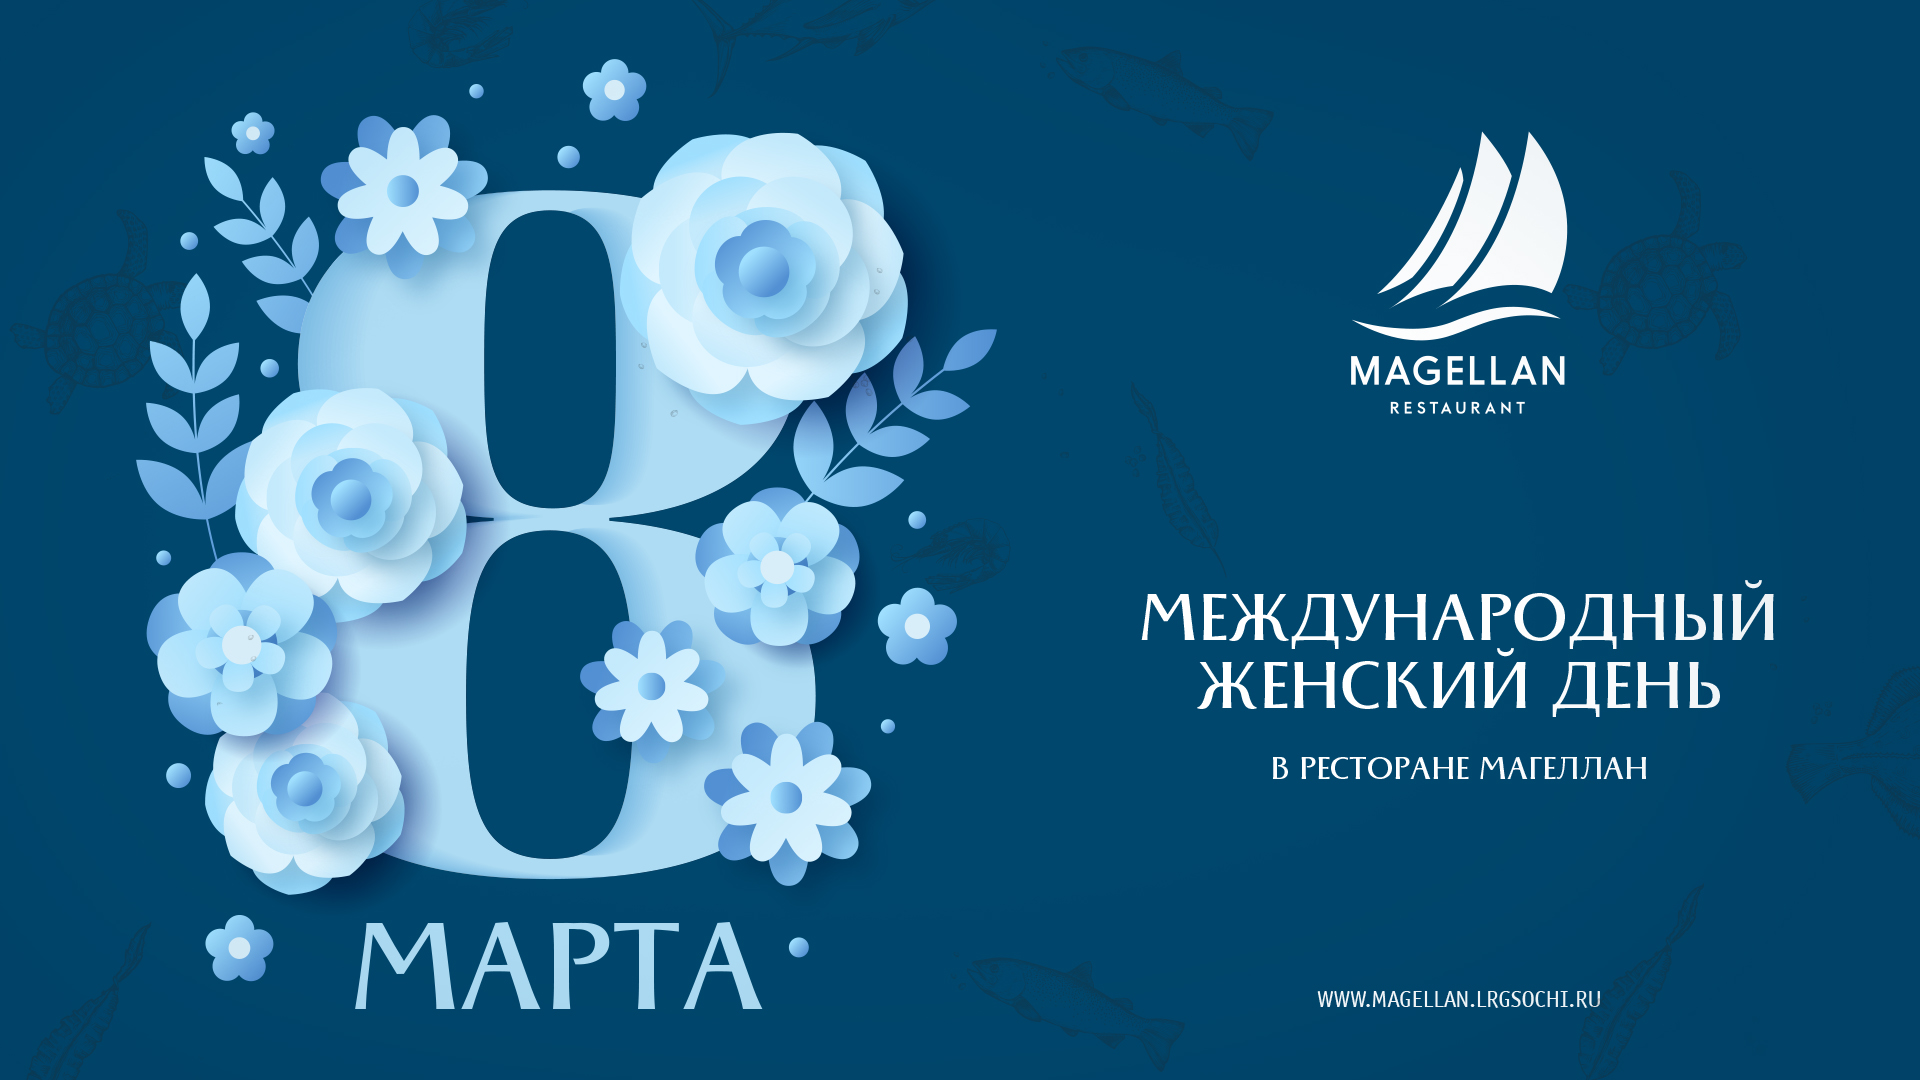 8 марта - Магеллан поздравляет